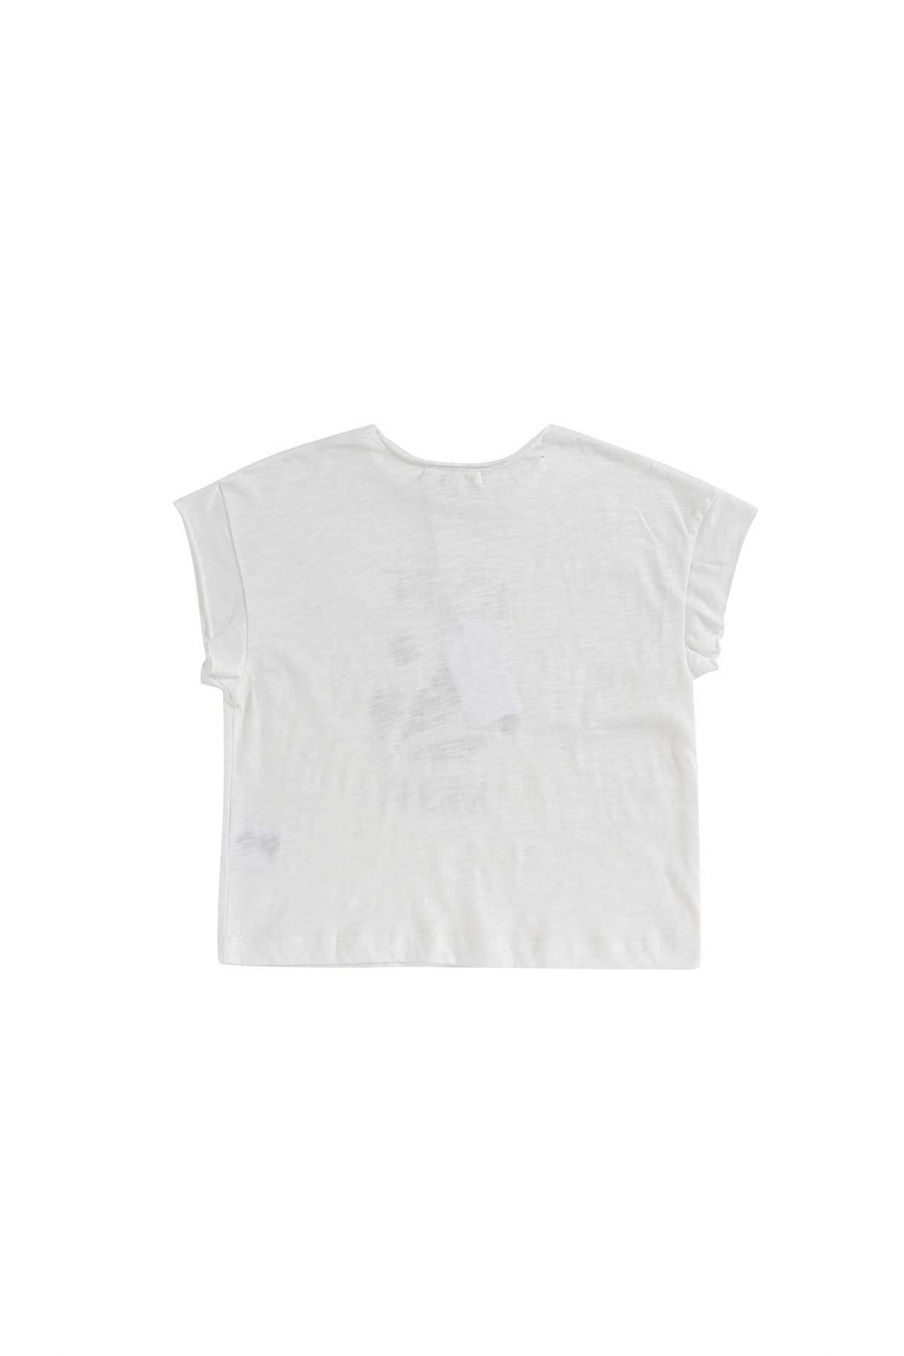 bebe-fille-t-shirt-flora-white